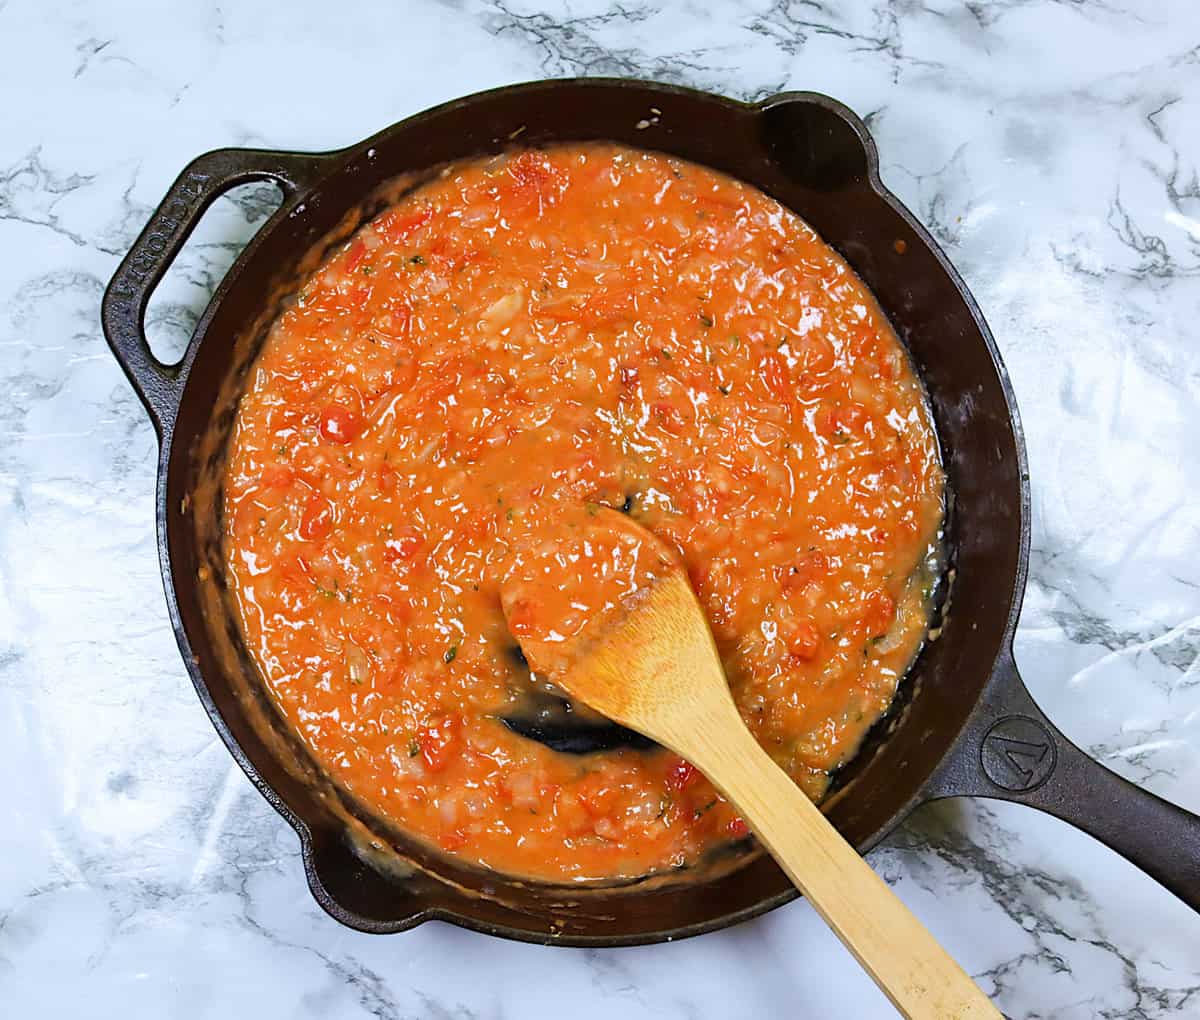 Tomato gravy fresh off the stove ready to enjoy